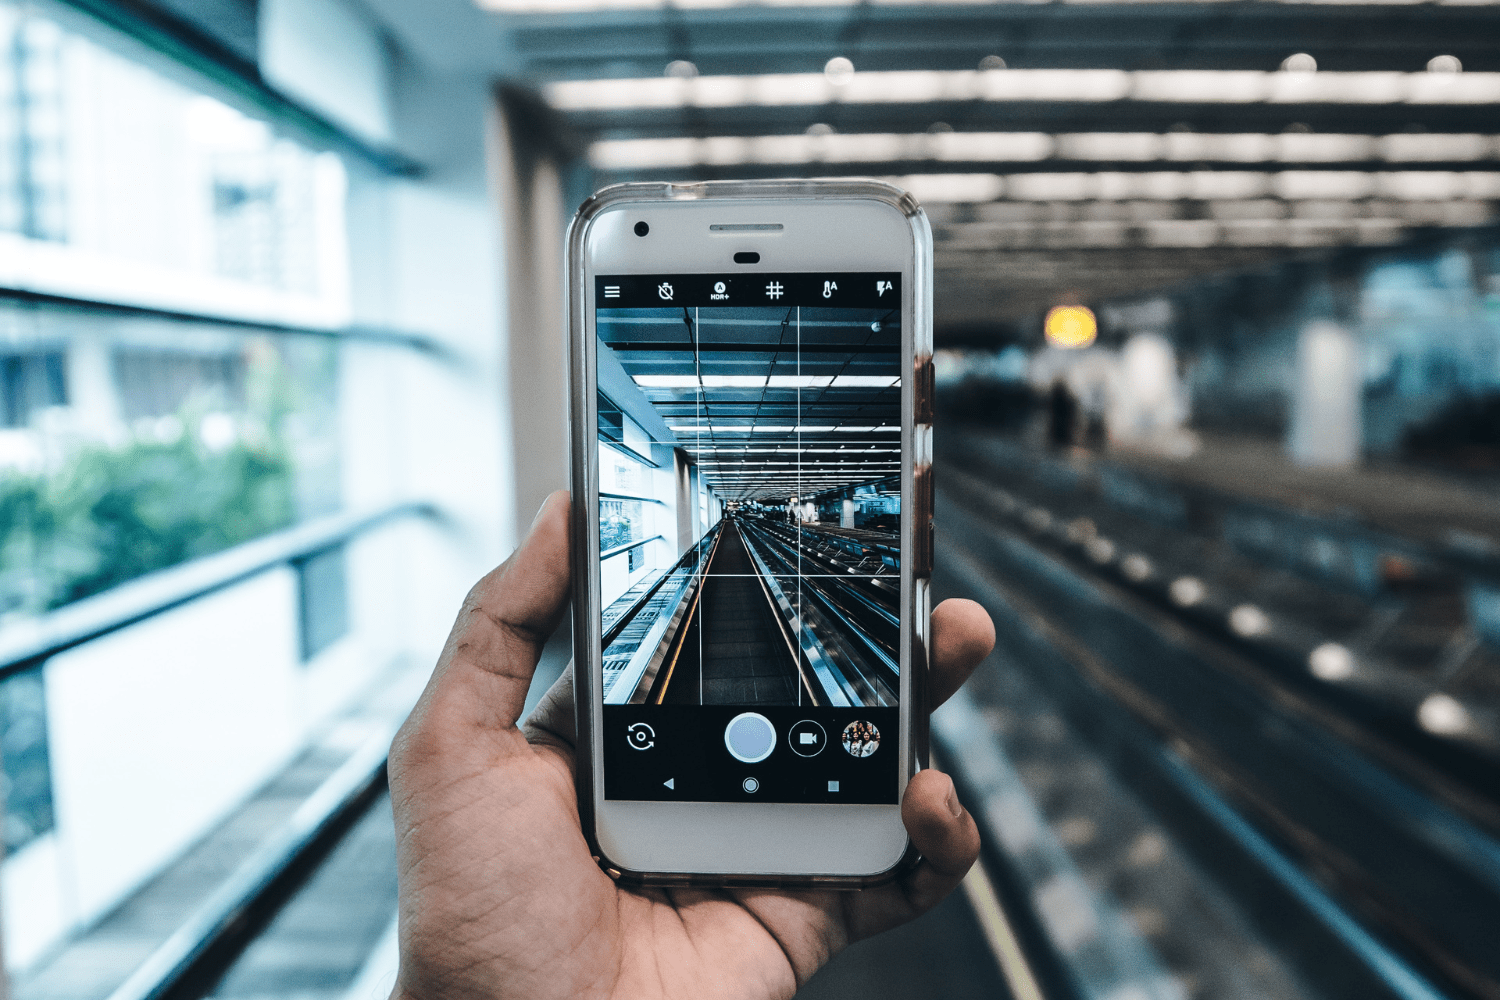 Aeroporto de Guarulhos proibirá utilização de celular para funcionários em alguns locais do terminal